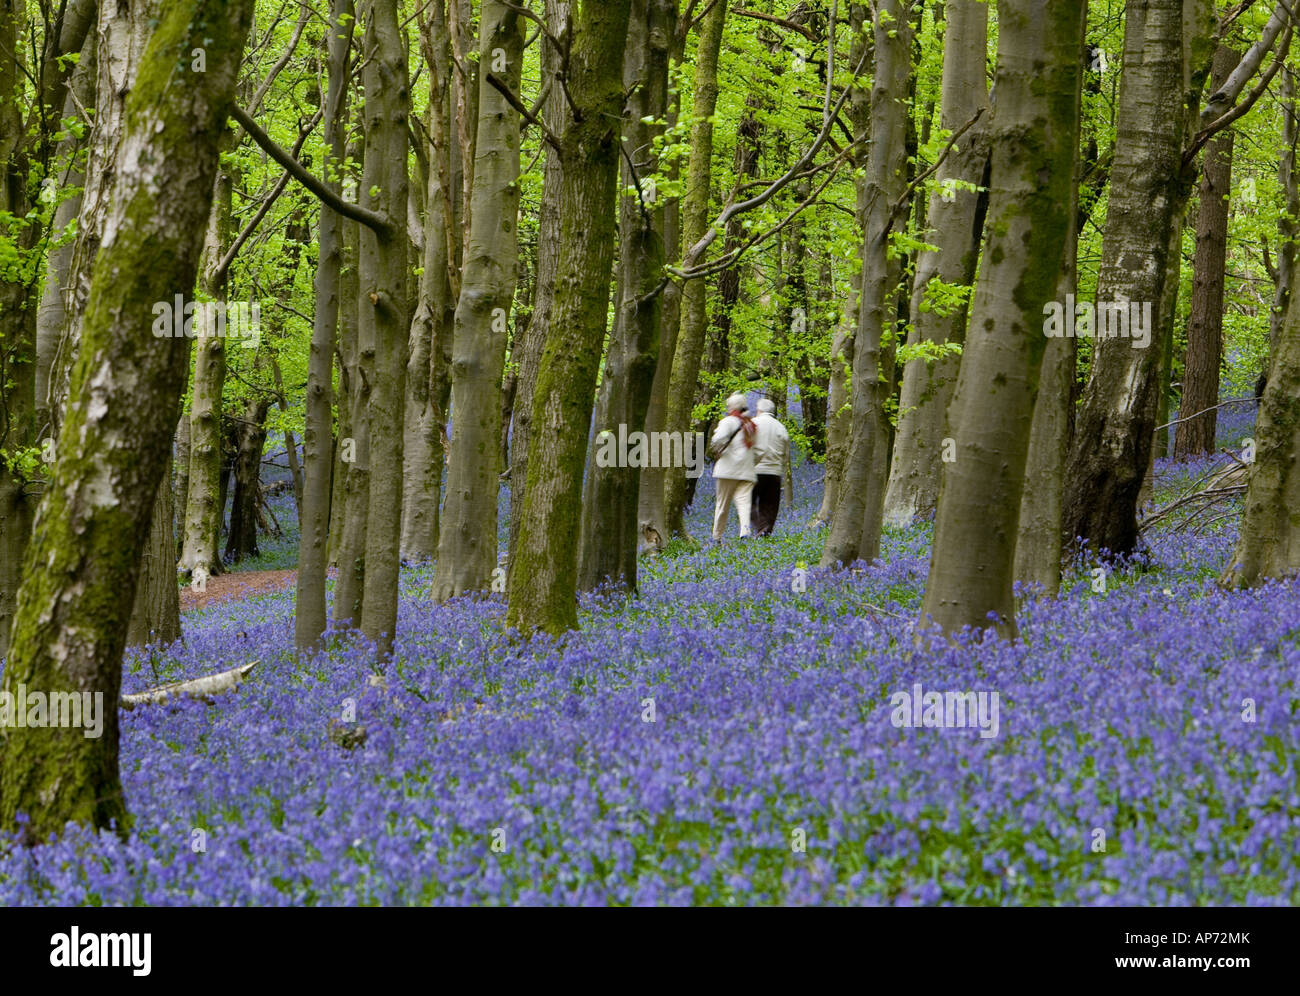 Ein Paar, das in einem Buchenholz mit Teppich und Bluebells geht Bäume mit hellgrünen neuen Blättern Stockfoto